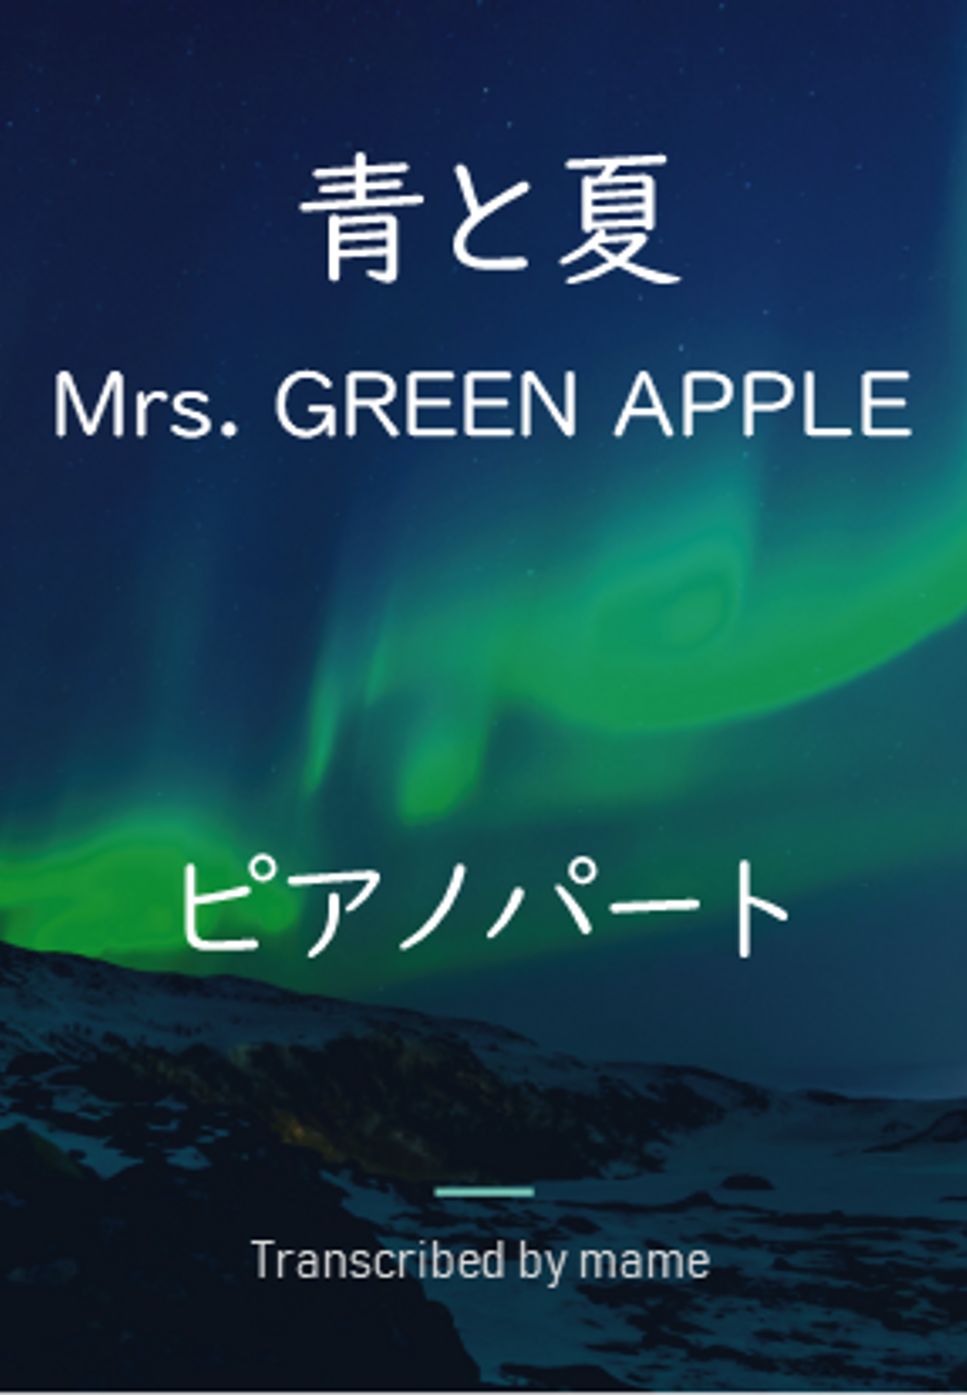 Mrs. GREEN APPLE - 青と夏 (ピアノパート) by mame